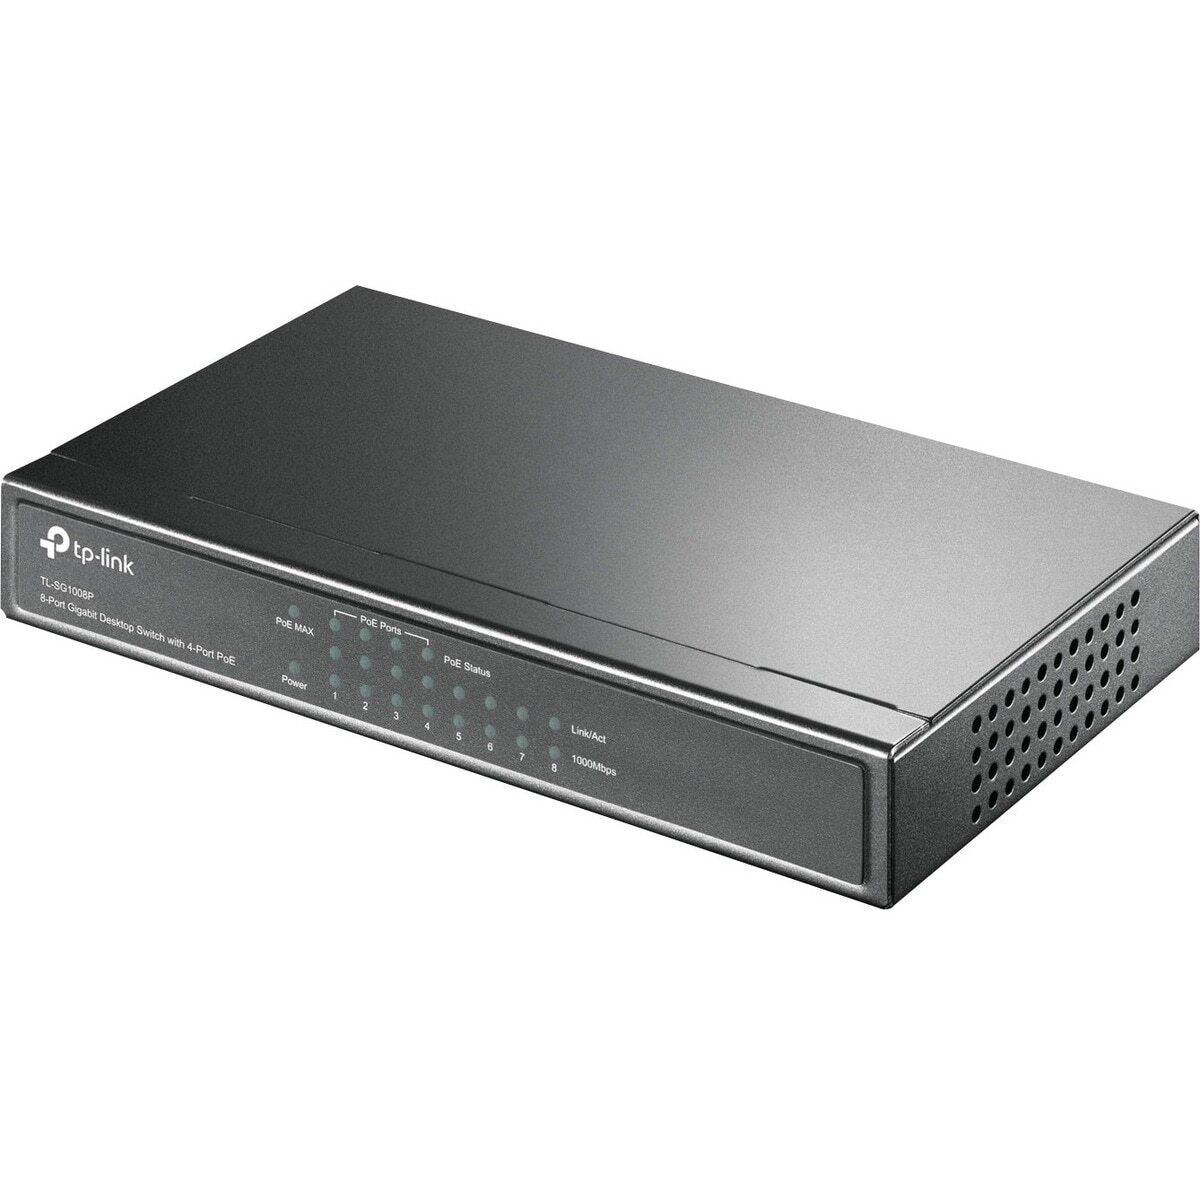 TP-LINK-New-TL-SG1008P _ 8-Port Gigabit Desktop POE Switch with 4 PoE 